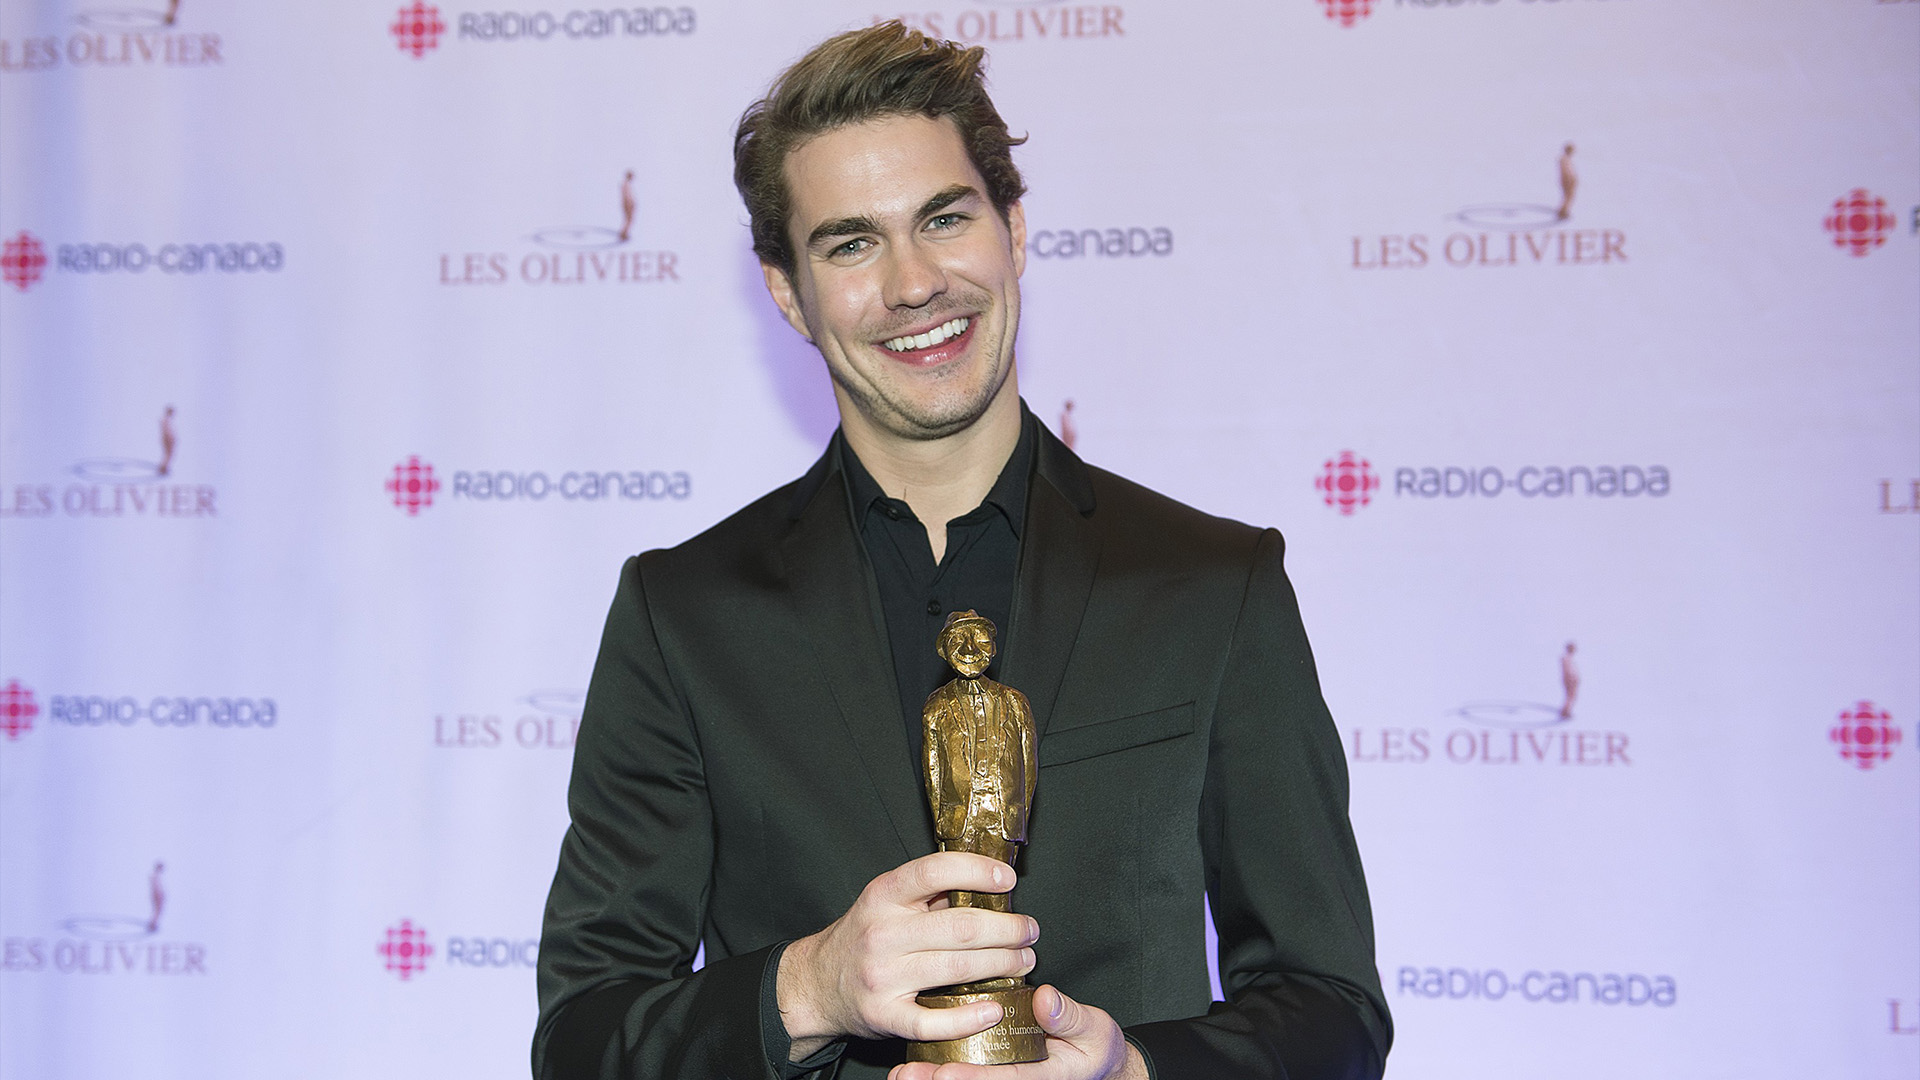 Julien Lacroix brandit son trophée lors de la remise des prix Gala Olivier à Montréal le 8 décembre 2019.